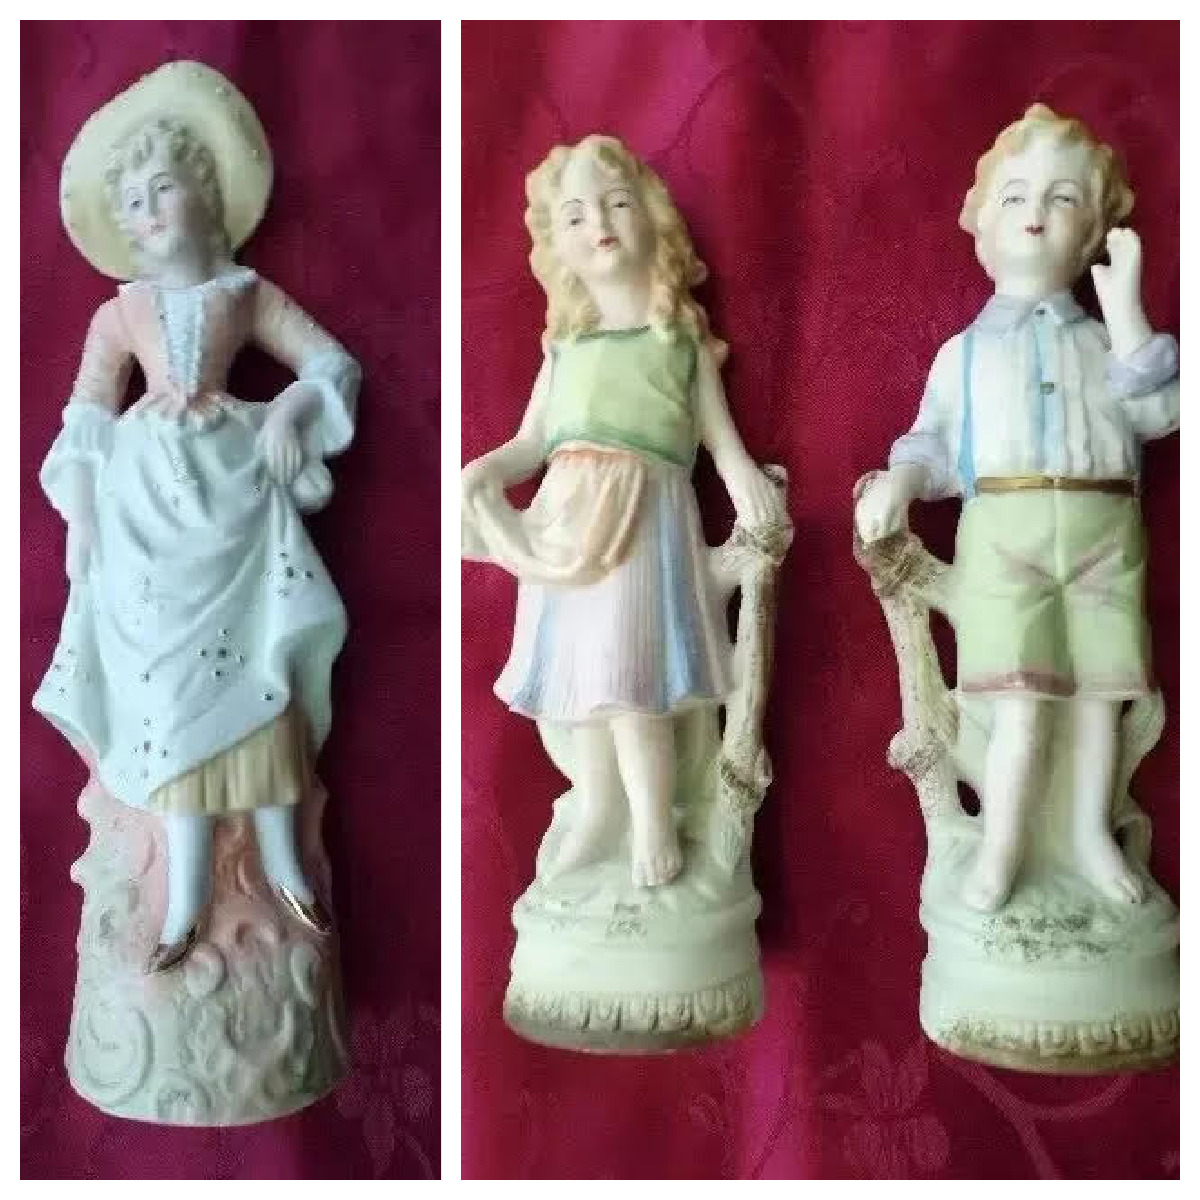 3 High Figurines Vintage Parian Bisque Porcelain soft pastel colors Children +